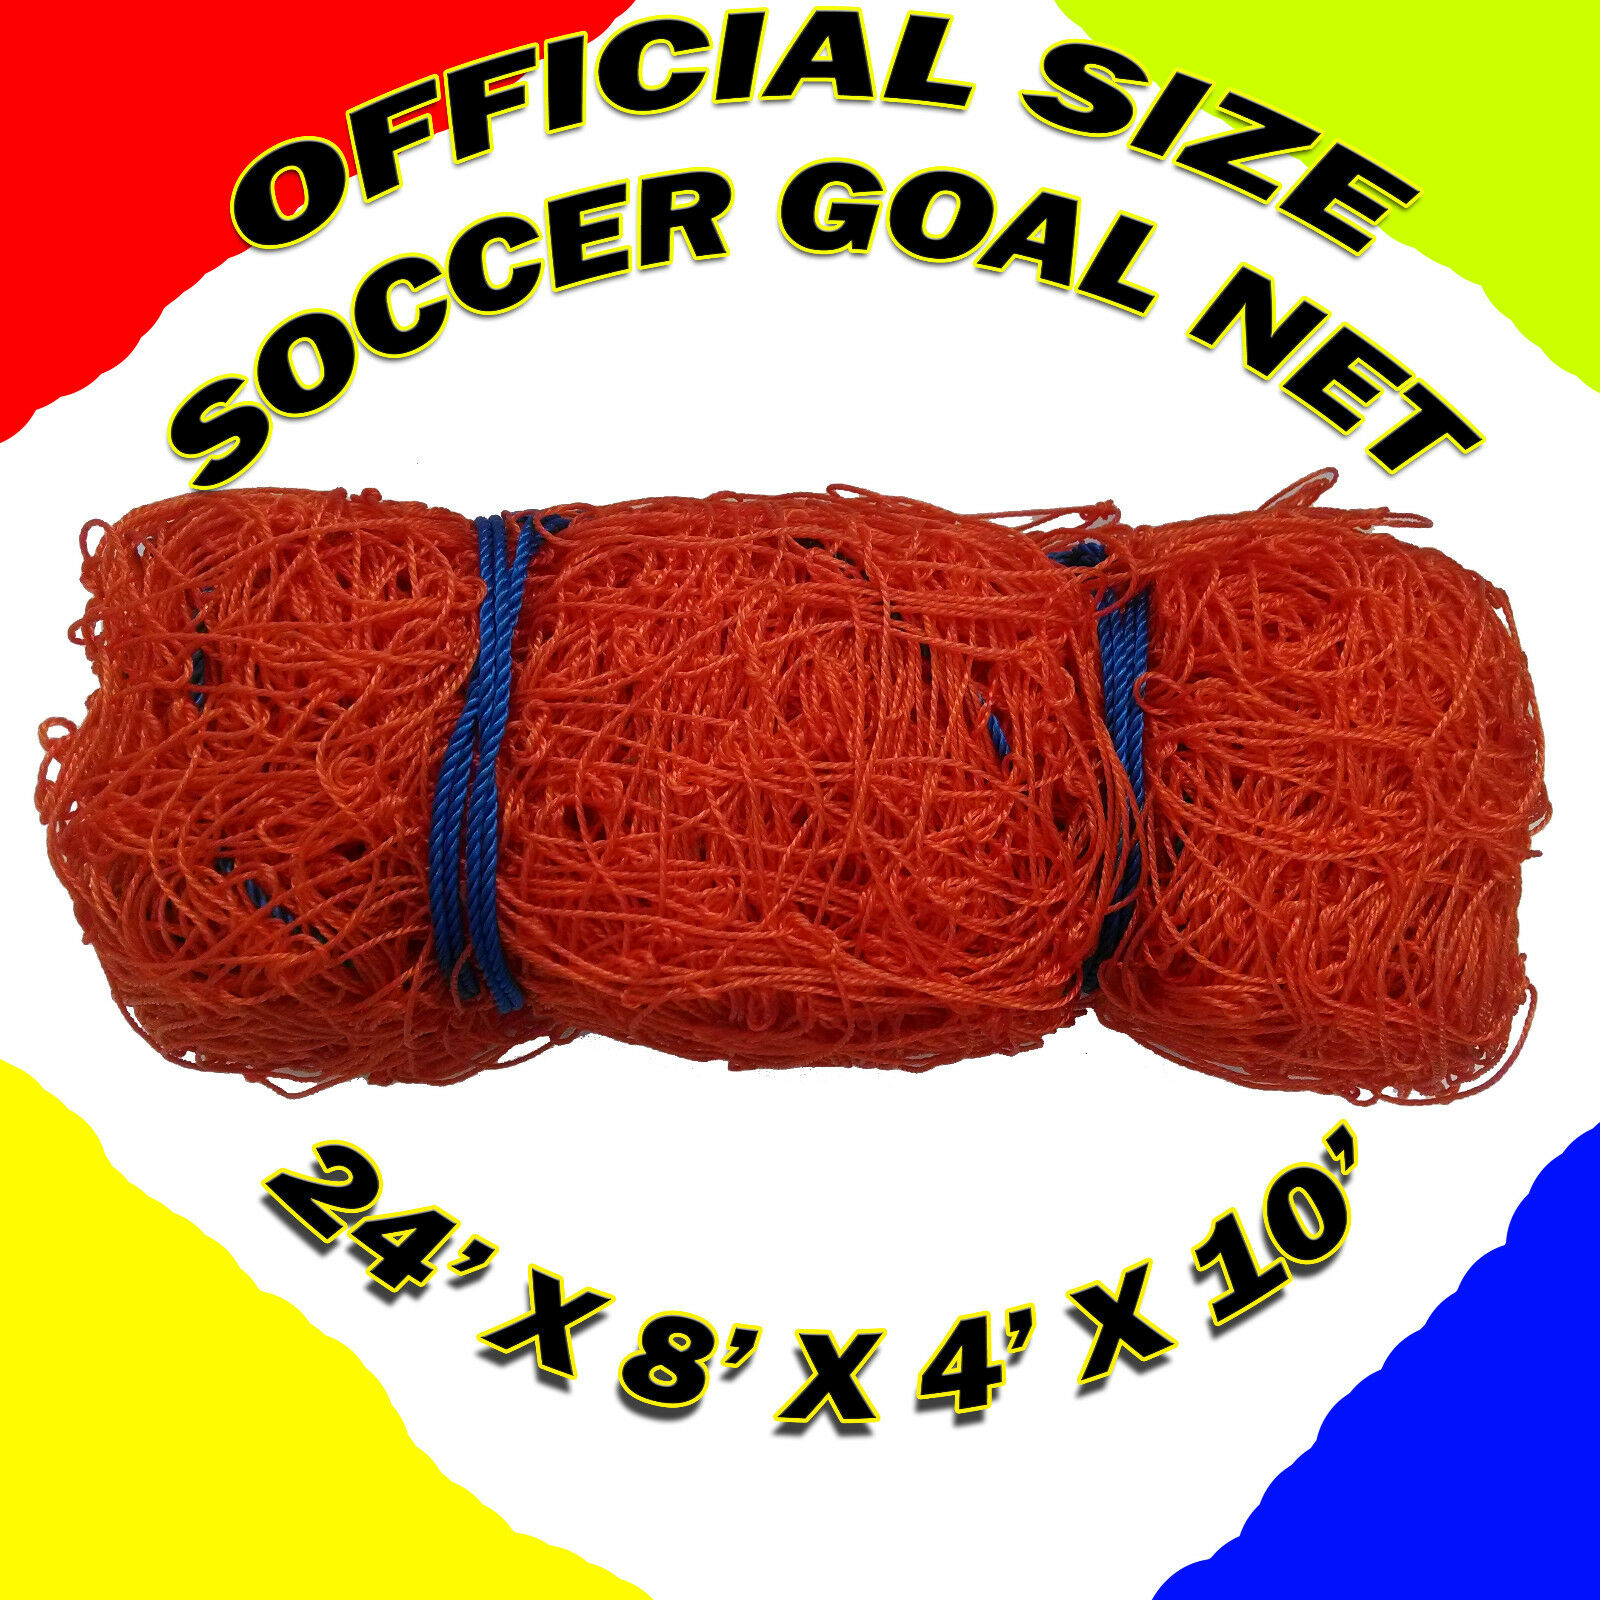 Official Size Soccer Goal Net 24' X 8' X 4' X 10'